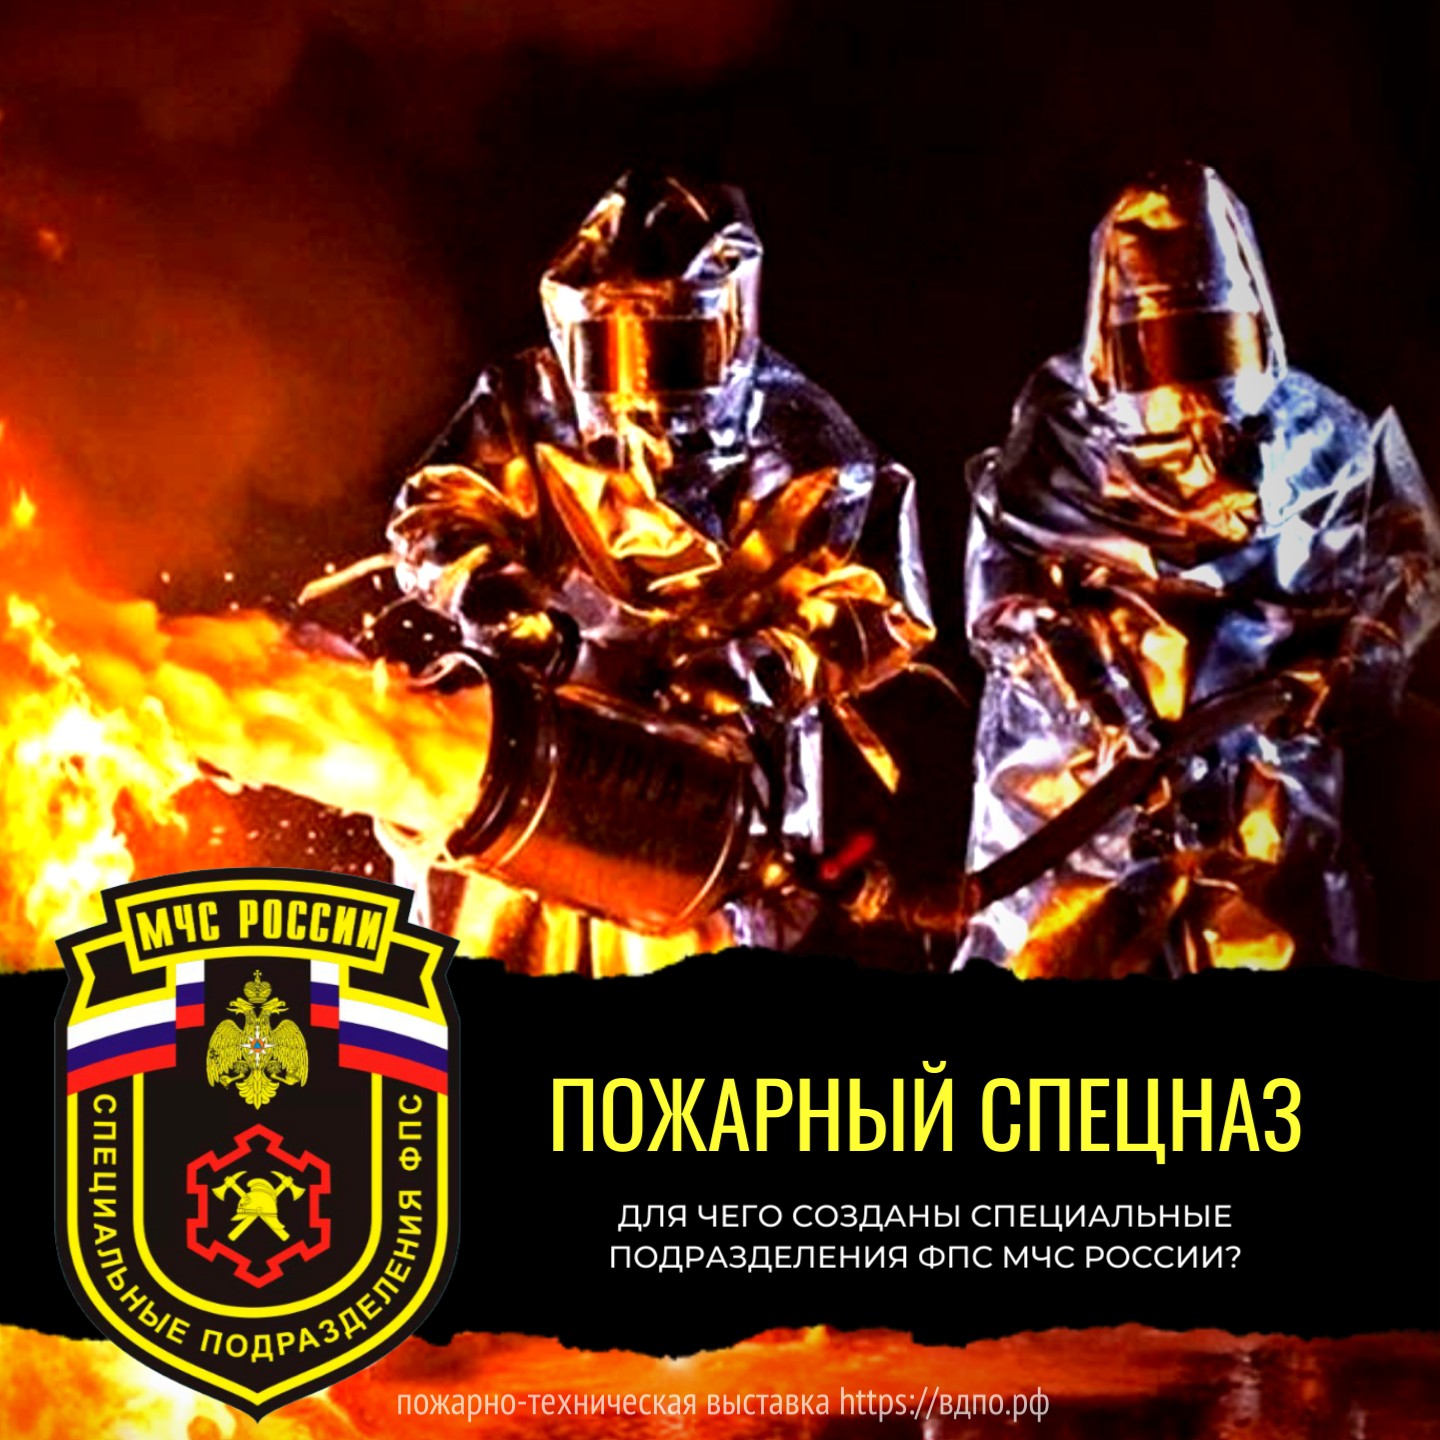 Пожарный спецназ  Специальные подразделения Федеральной противопожарной службы МЧС России были образованы после......